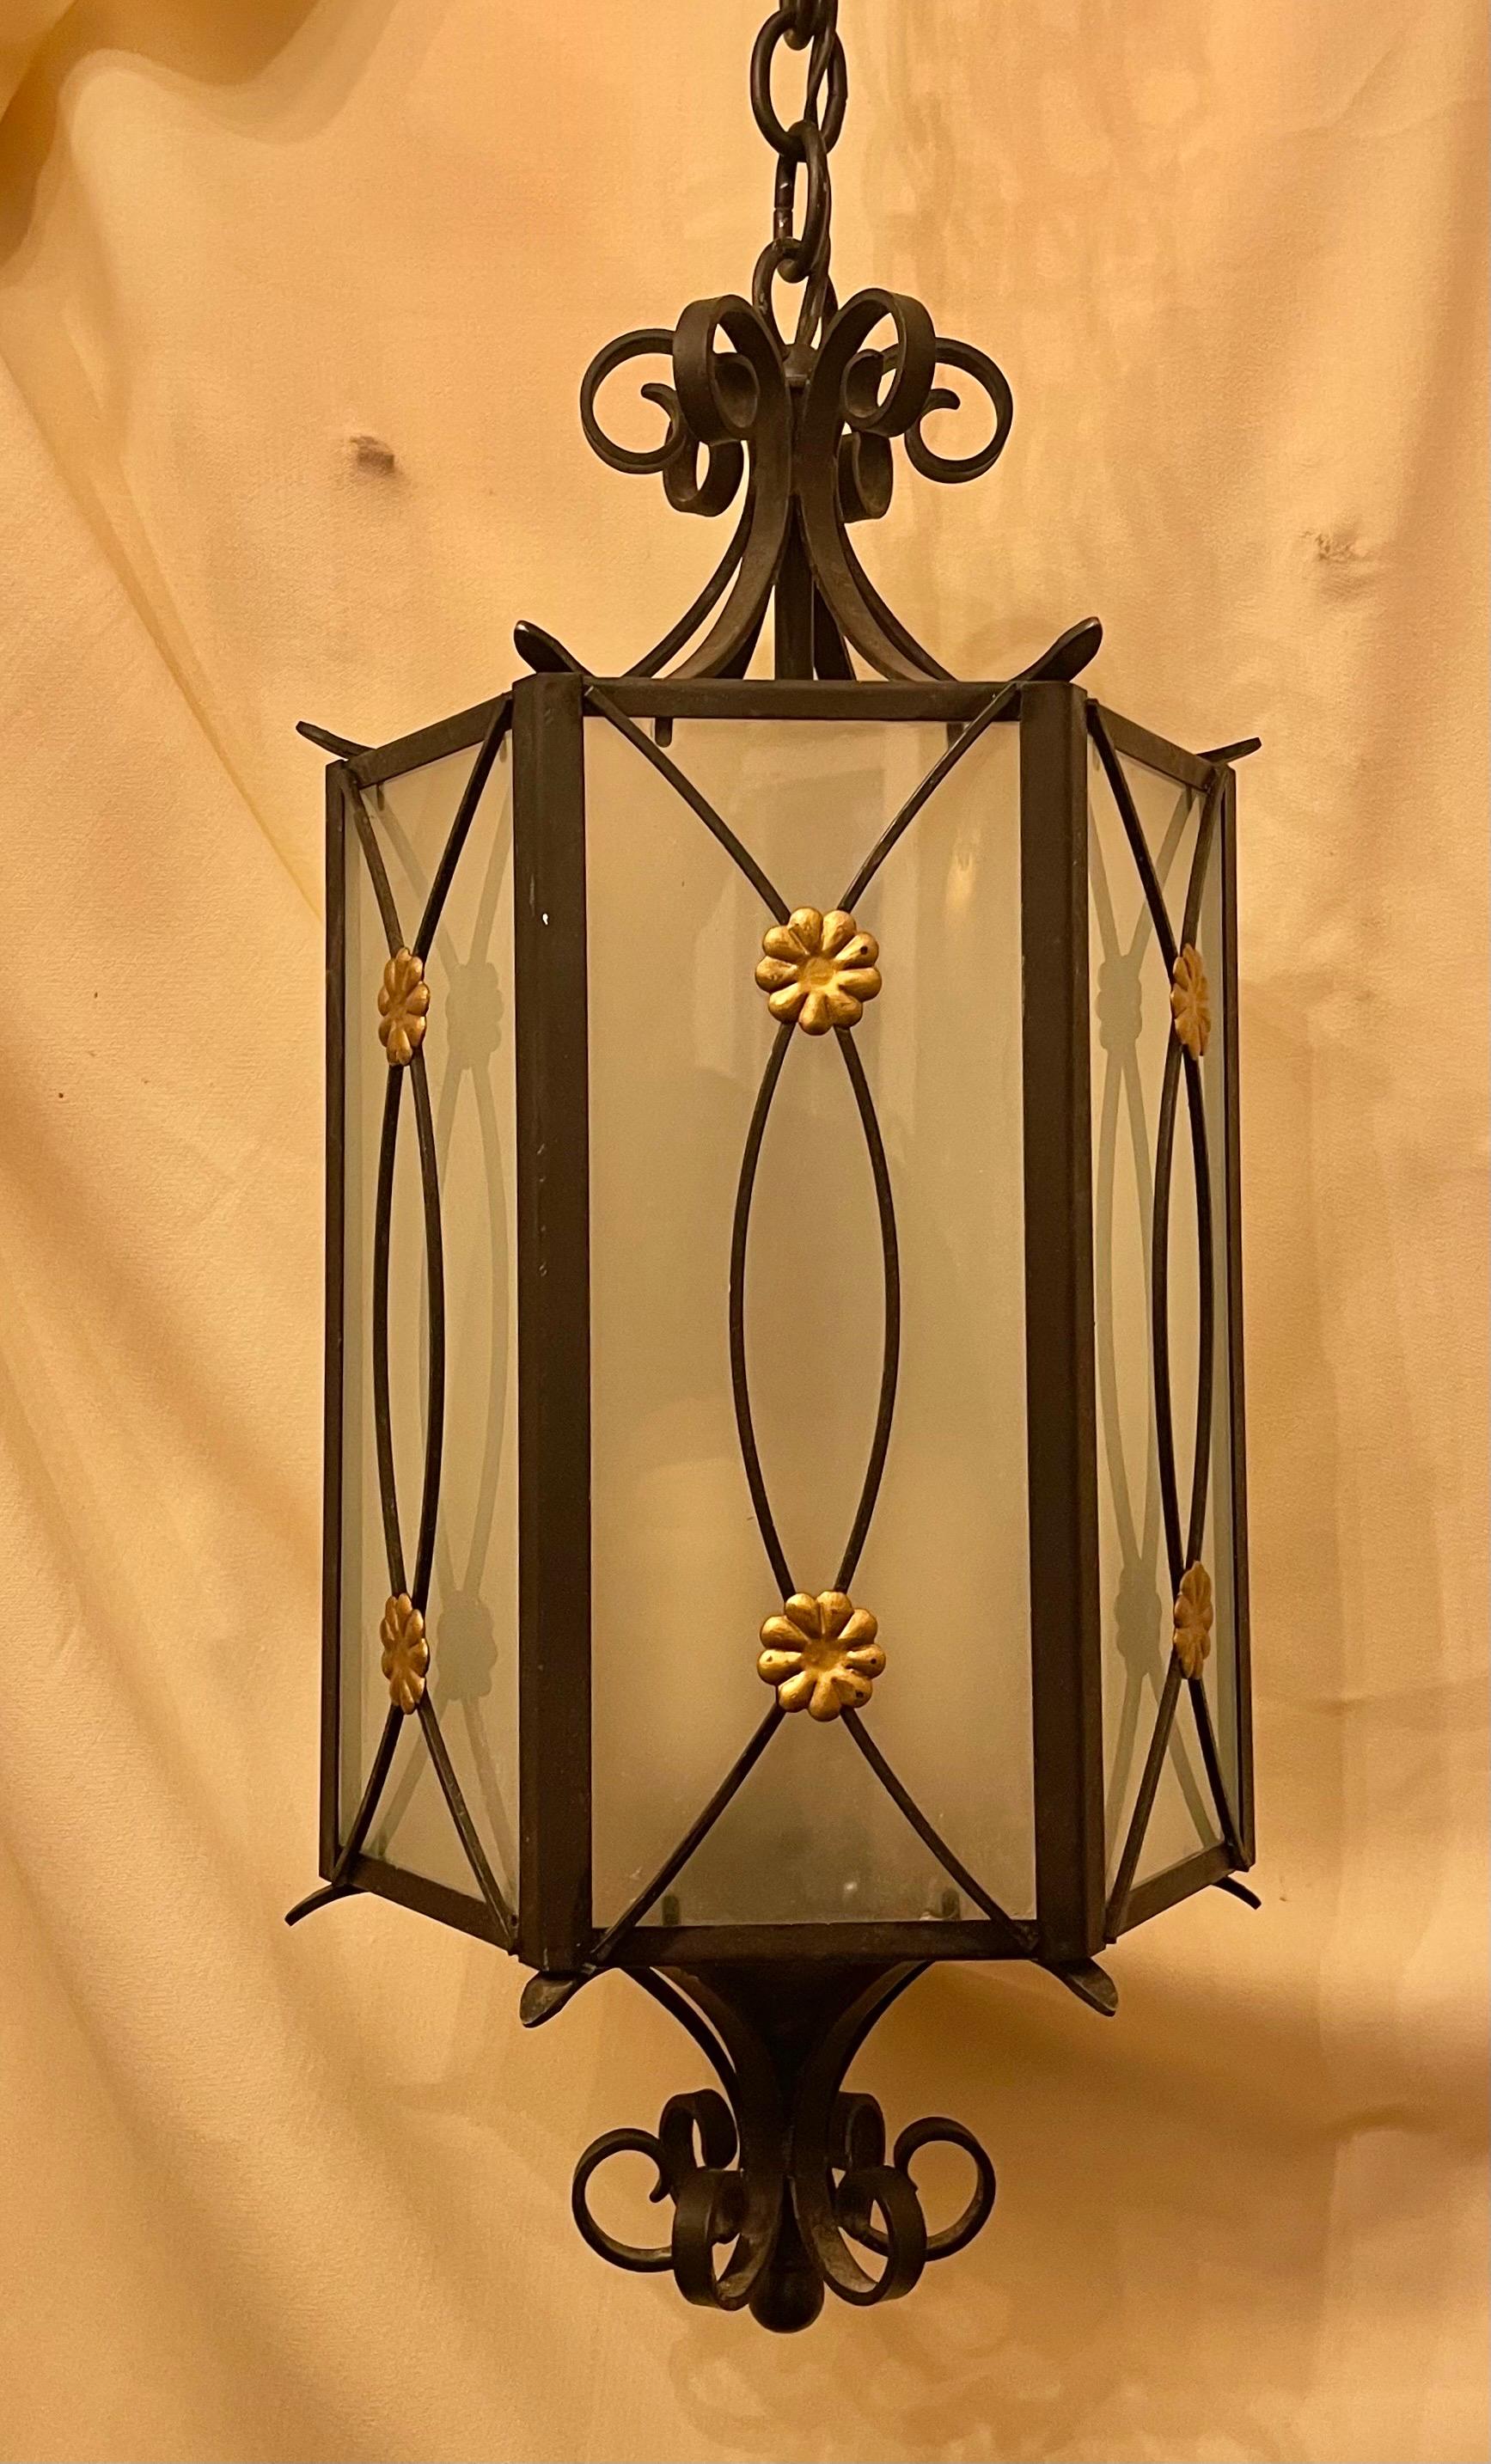 Eine wunderbare Regency-Eisen mit Gold vergoldet Blume Rosette Medaillon mit Einsatz Milchglas Panel Sechseck sechseckige Laterne förmige Leuchte mit 3 Innen Kandelaber Steckdosen.